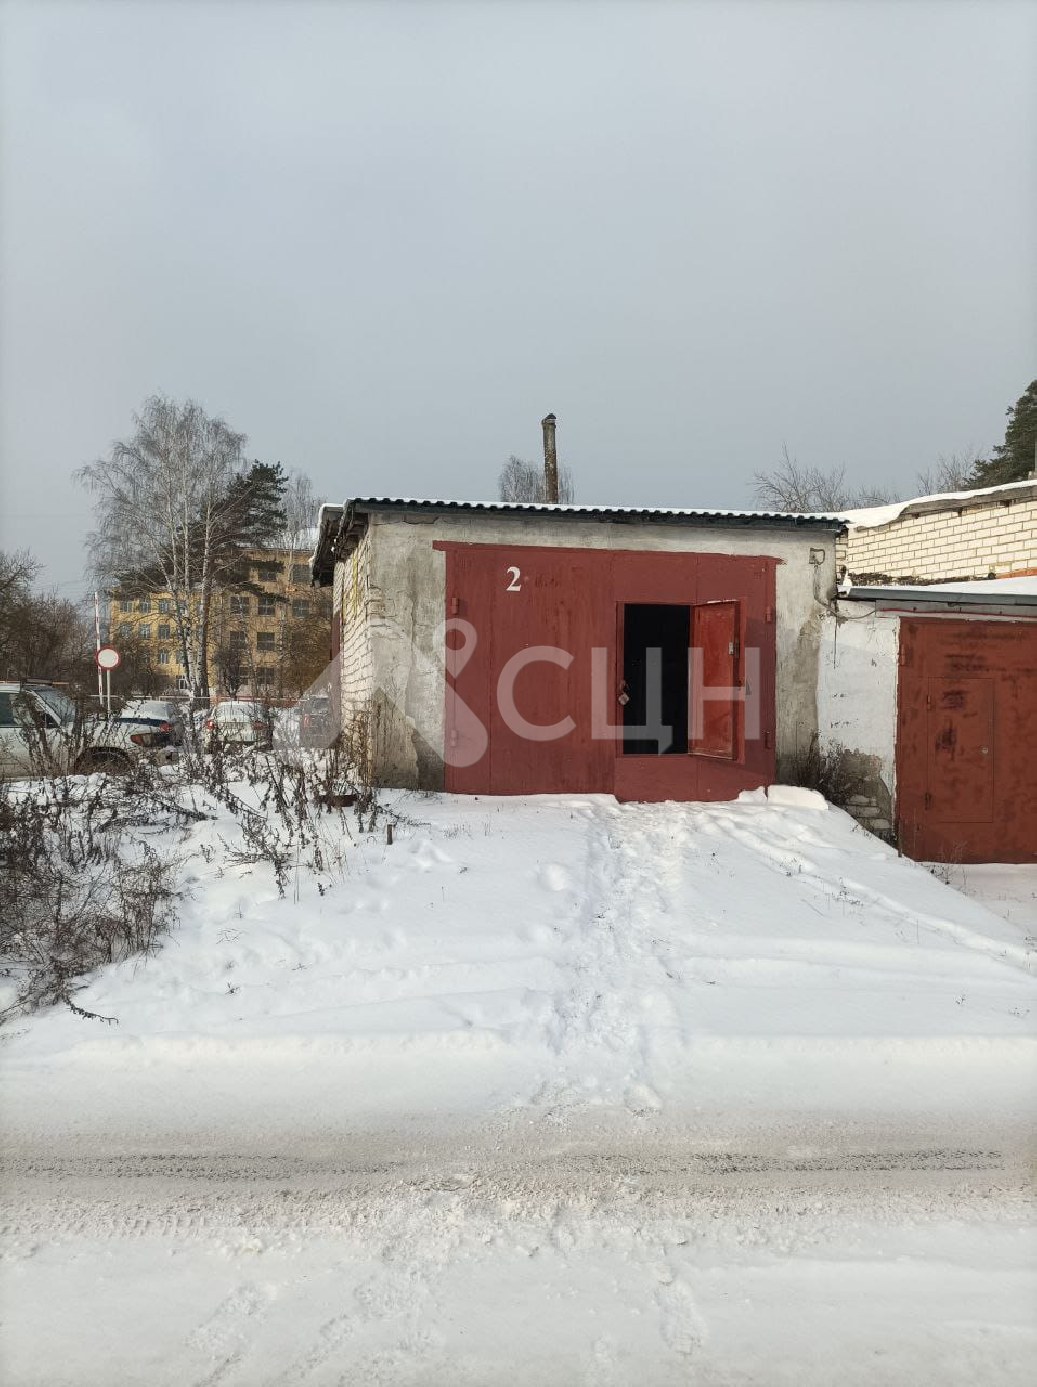 циан саров недвижимость
: Г. Саров, улица Зернова, ГСК 3, блок 1, 1-комн гараж, , продажа.